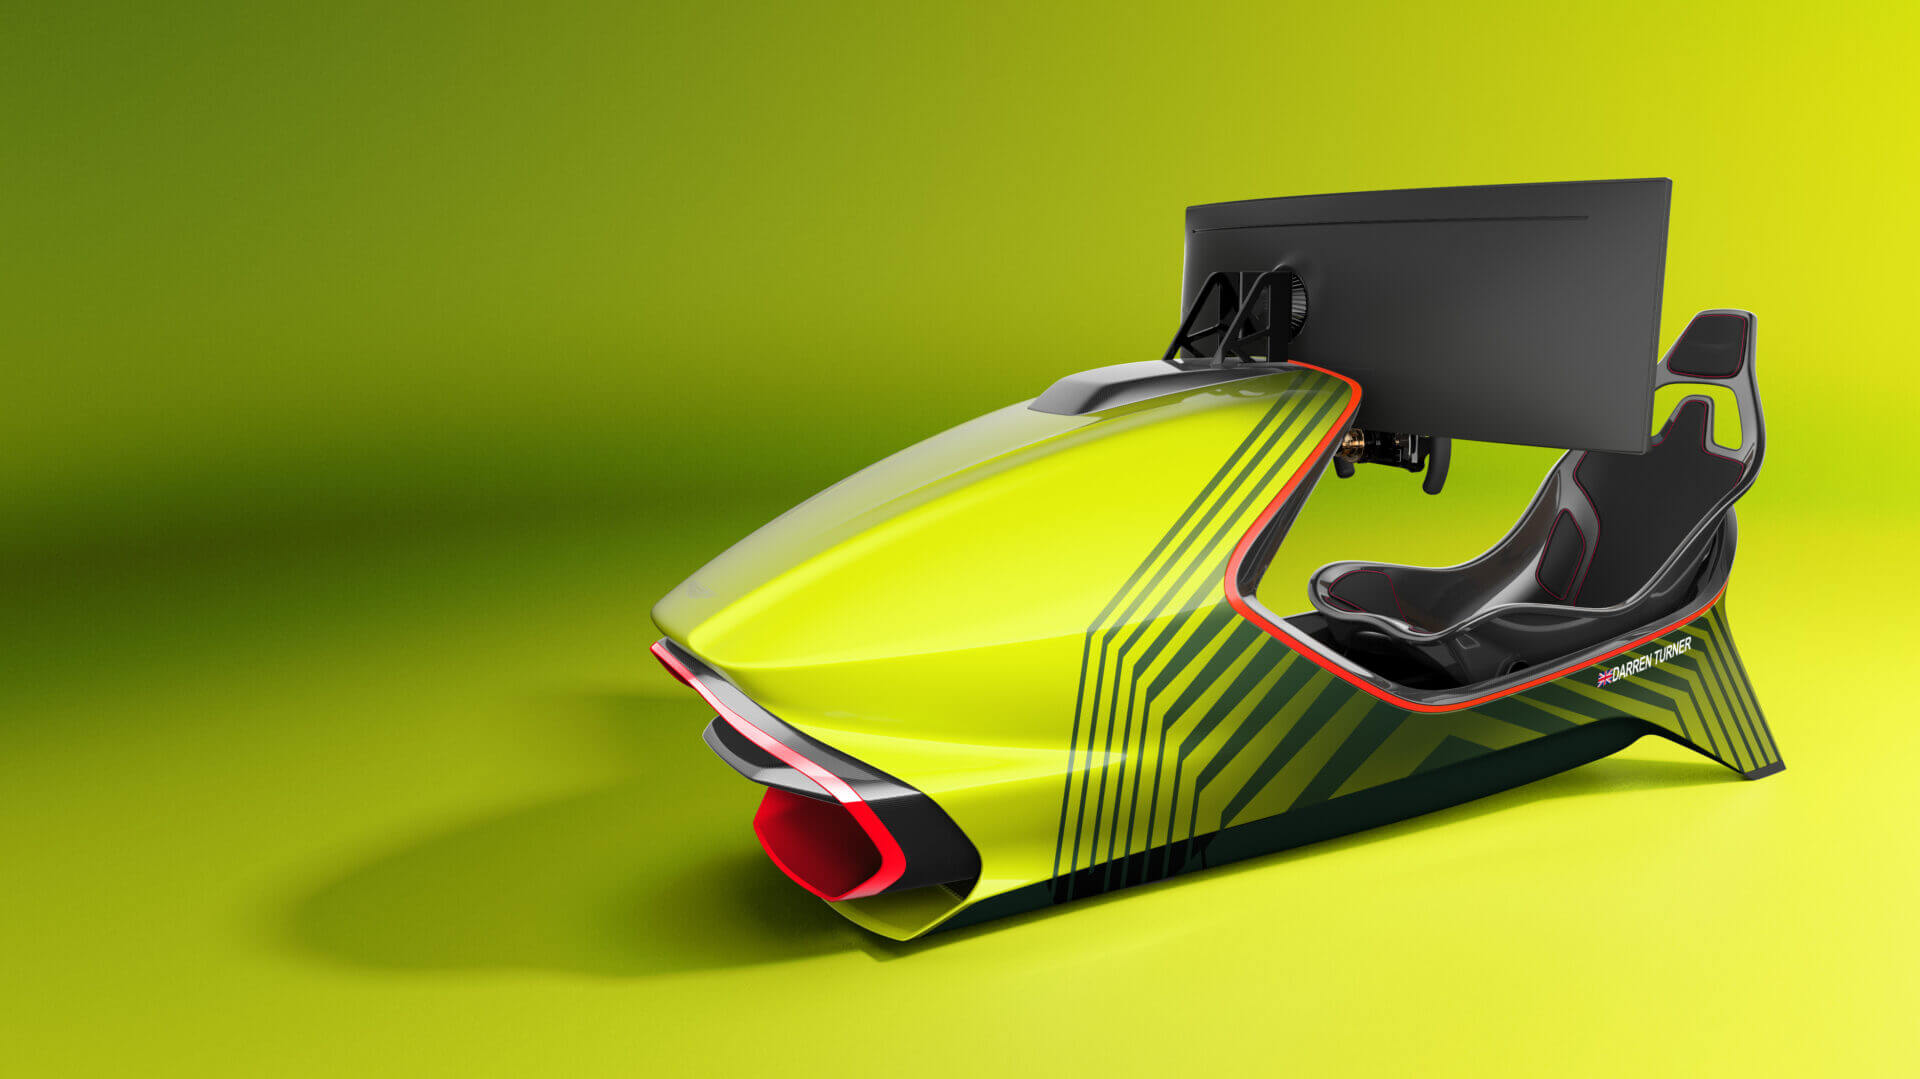 More information about "Aston Martin presenta AMR-C01, simulatore da $90.000!"